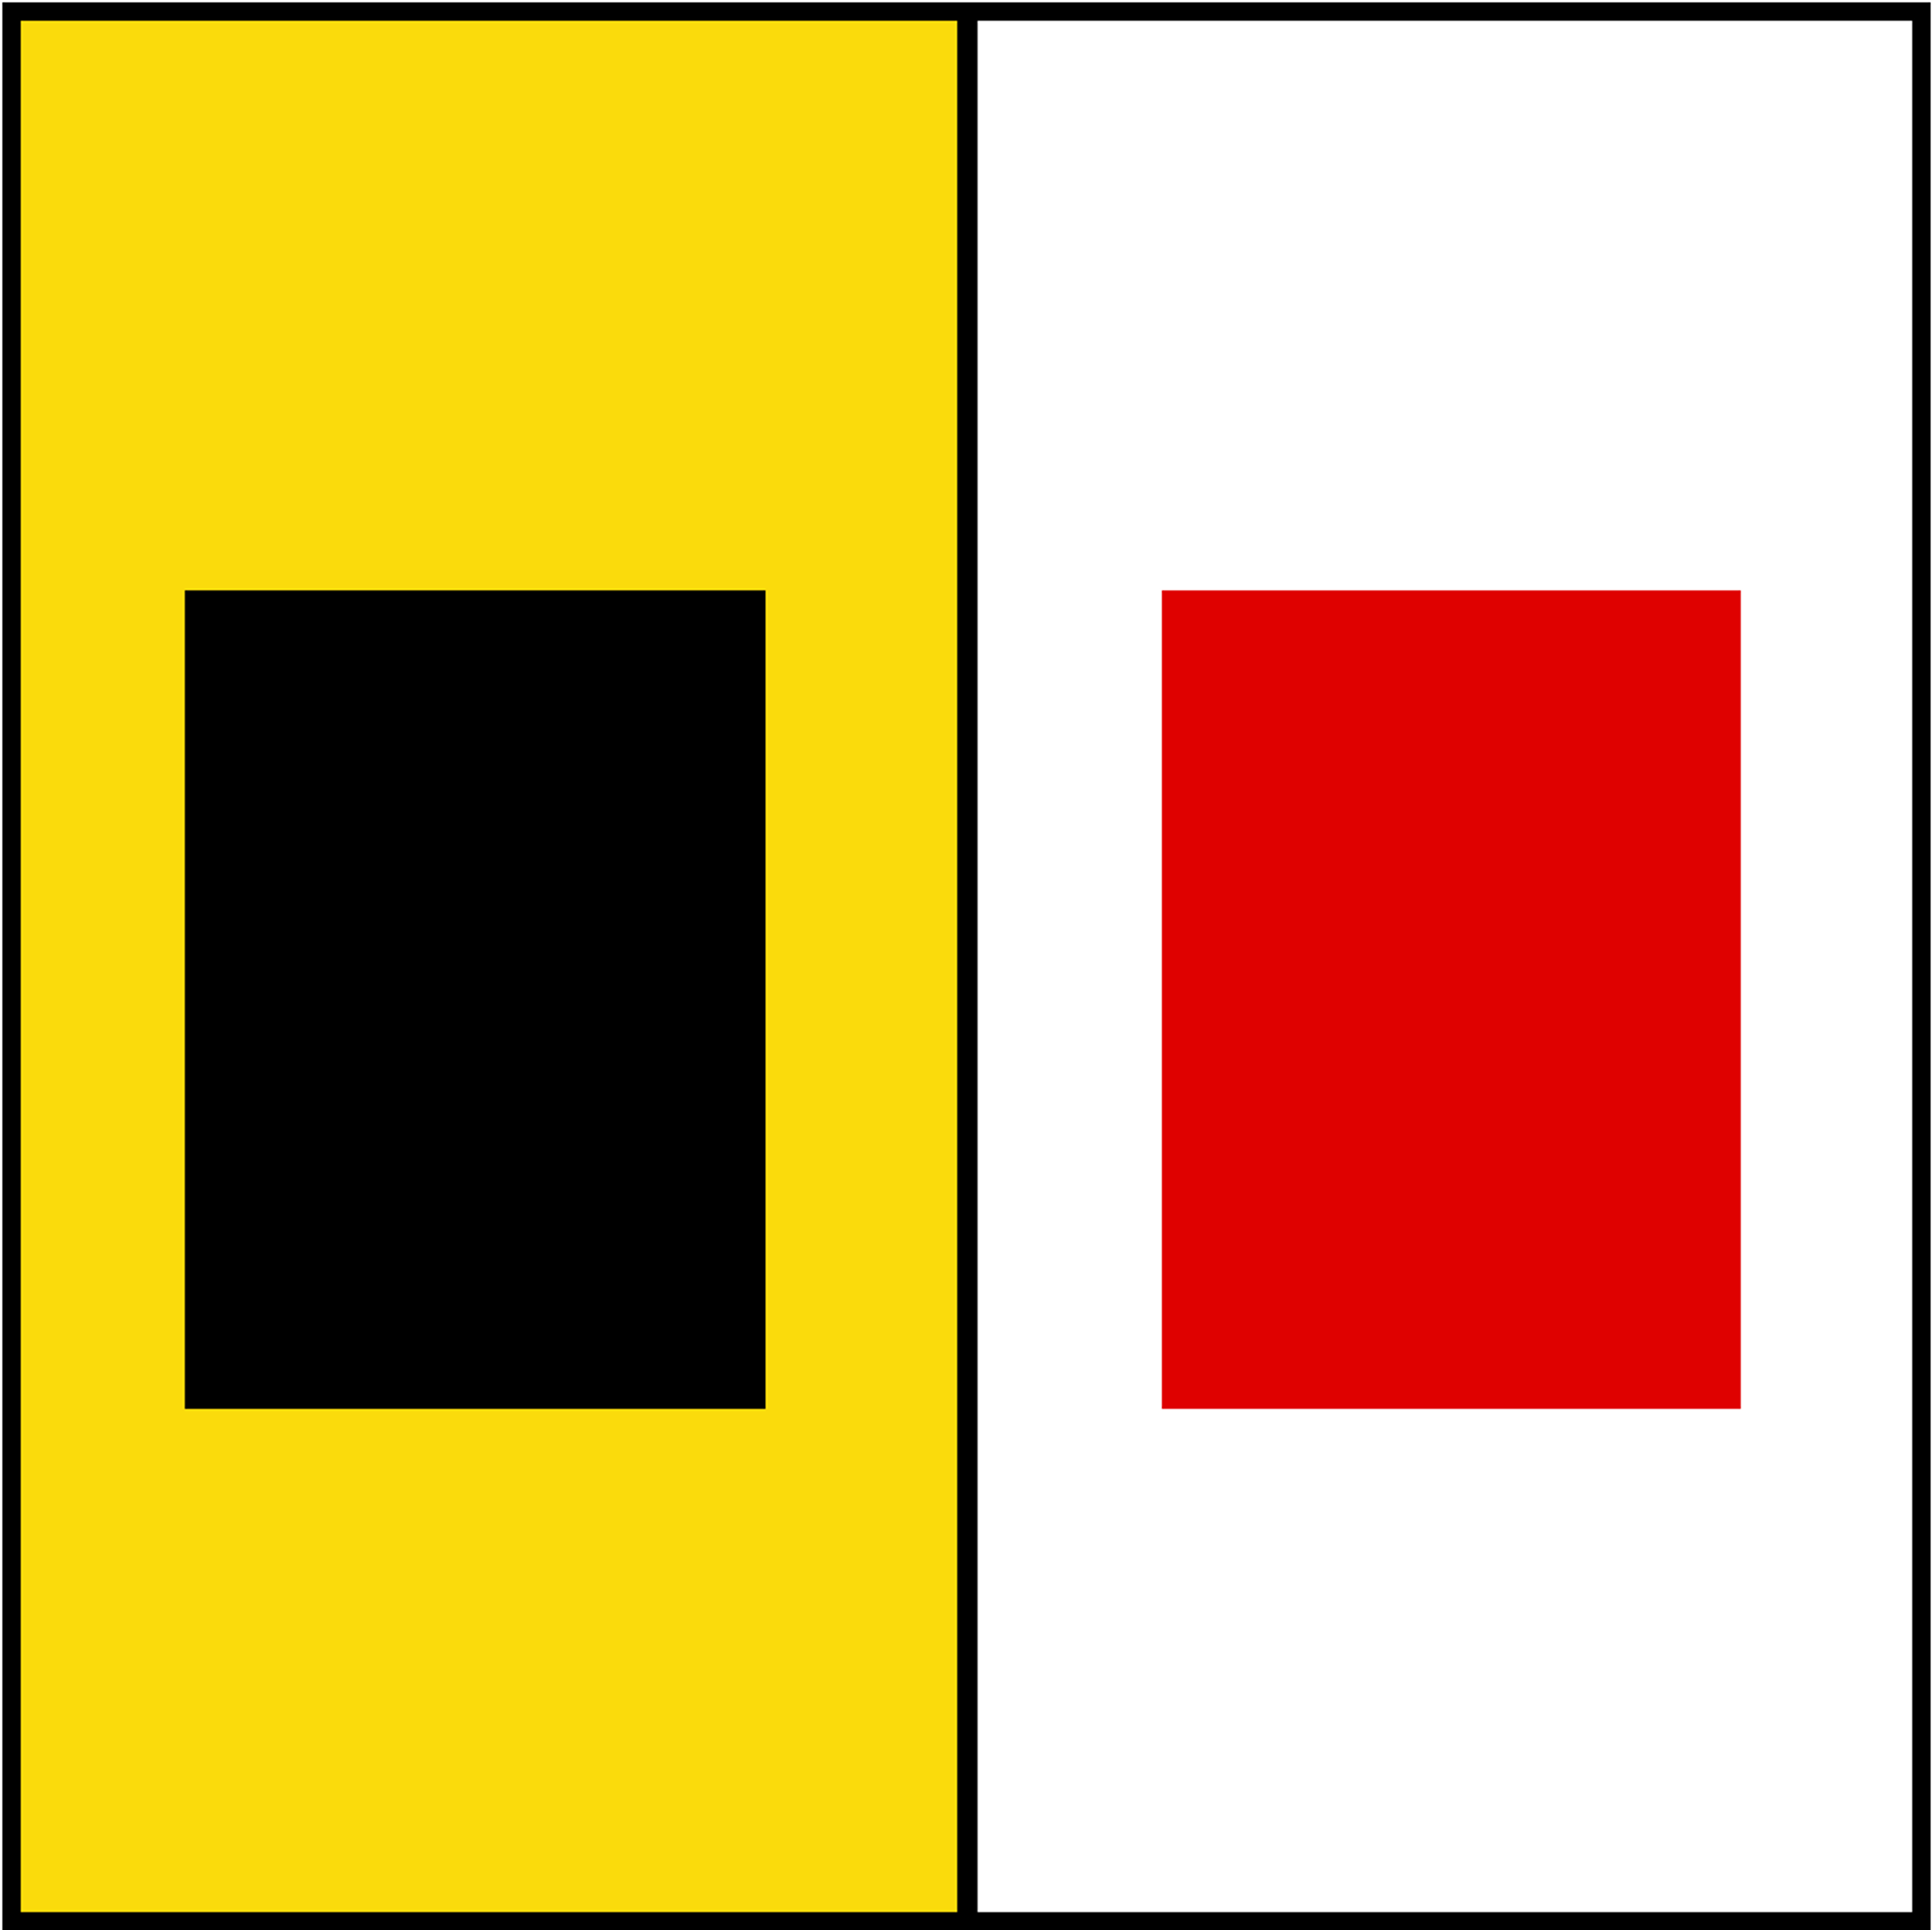 Mecklenburg-Vorpommern Wappen